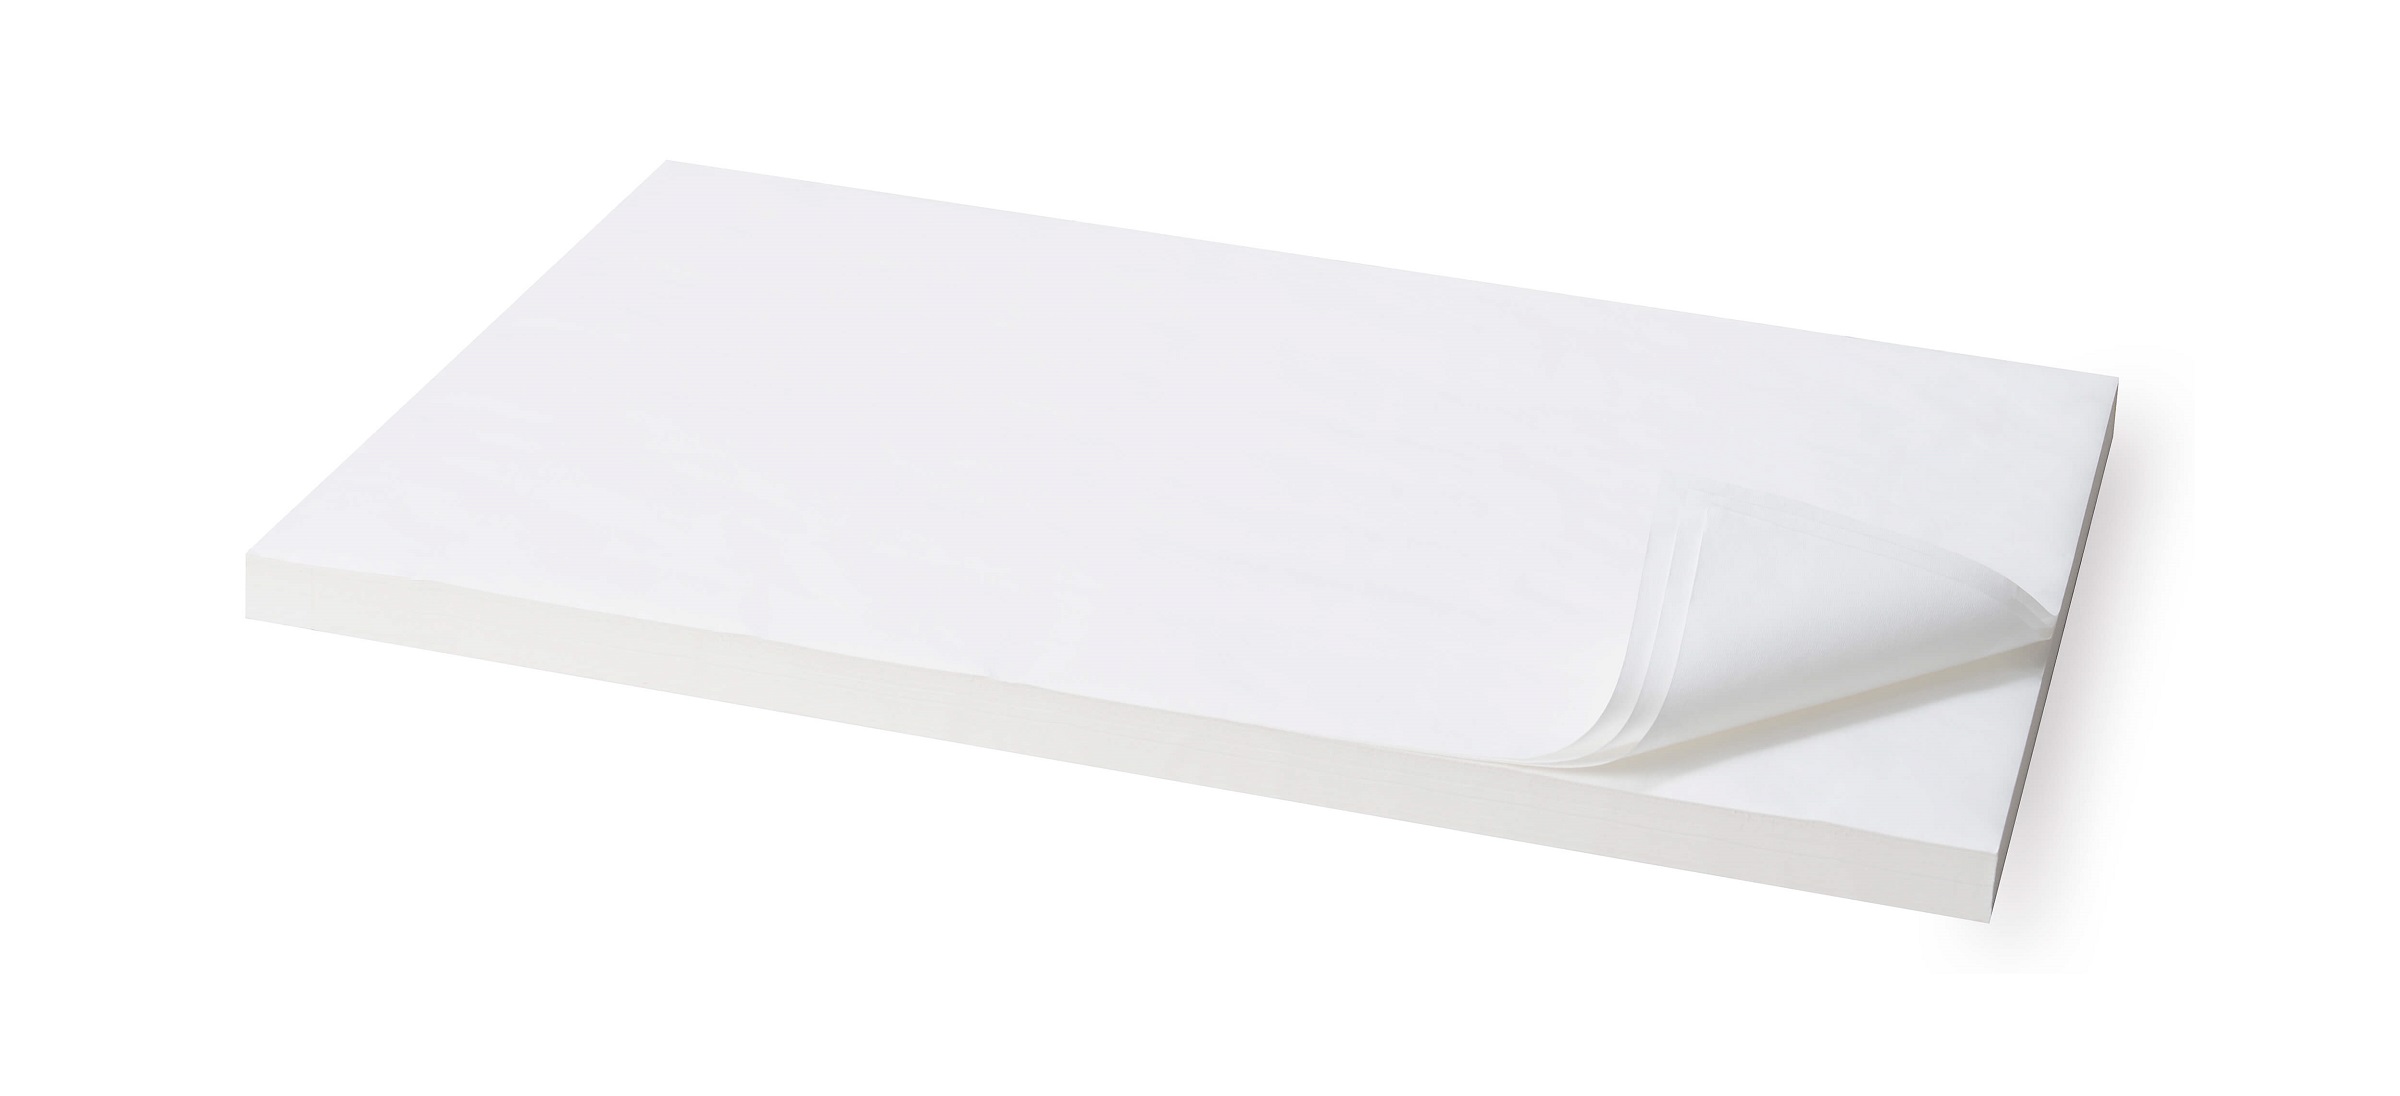 タウパー 食材紙白 (570x870)